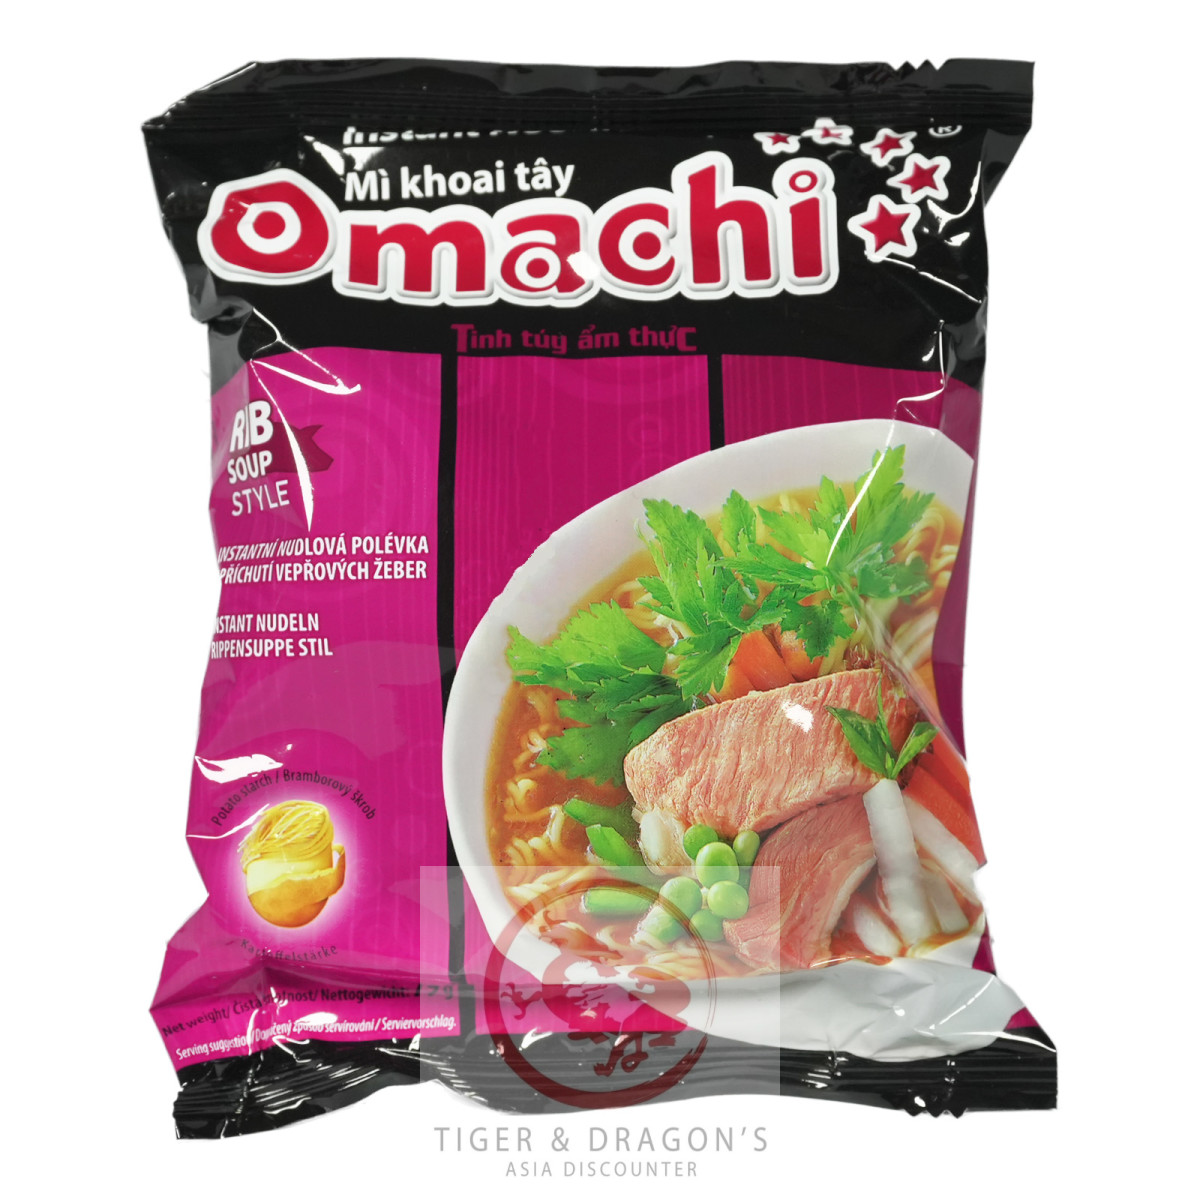 Omachi Instantnudeln Schweinrippchen Geschmack 79g